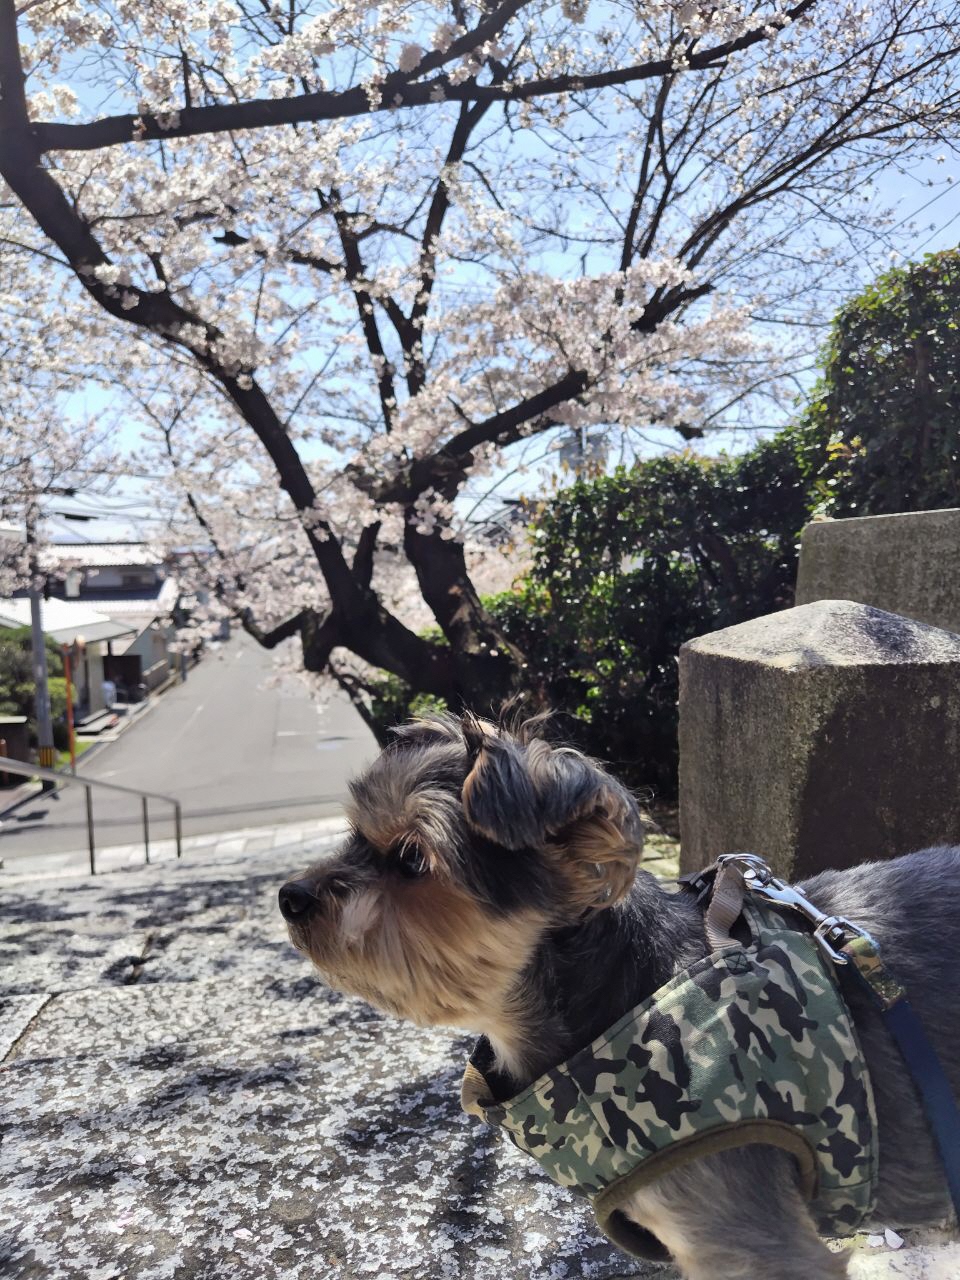 晴天の中桜の木の下にいる犬の写真